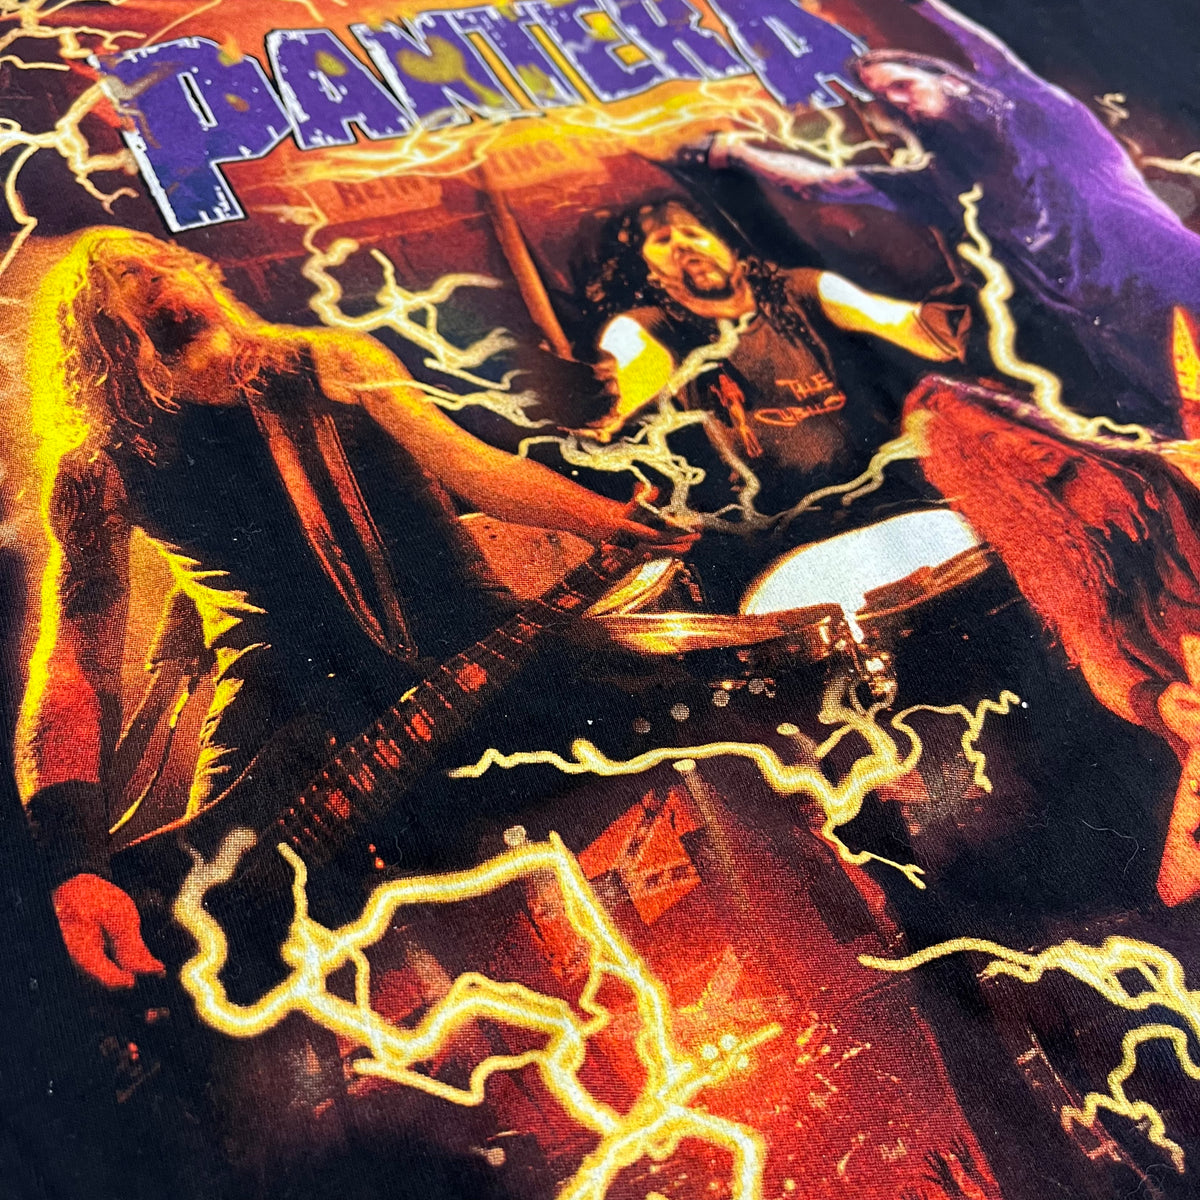 Vintage Pantera &quot;Lightning&quot; Tour T-Shirt